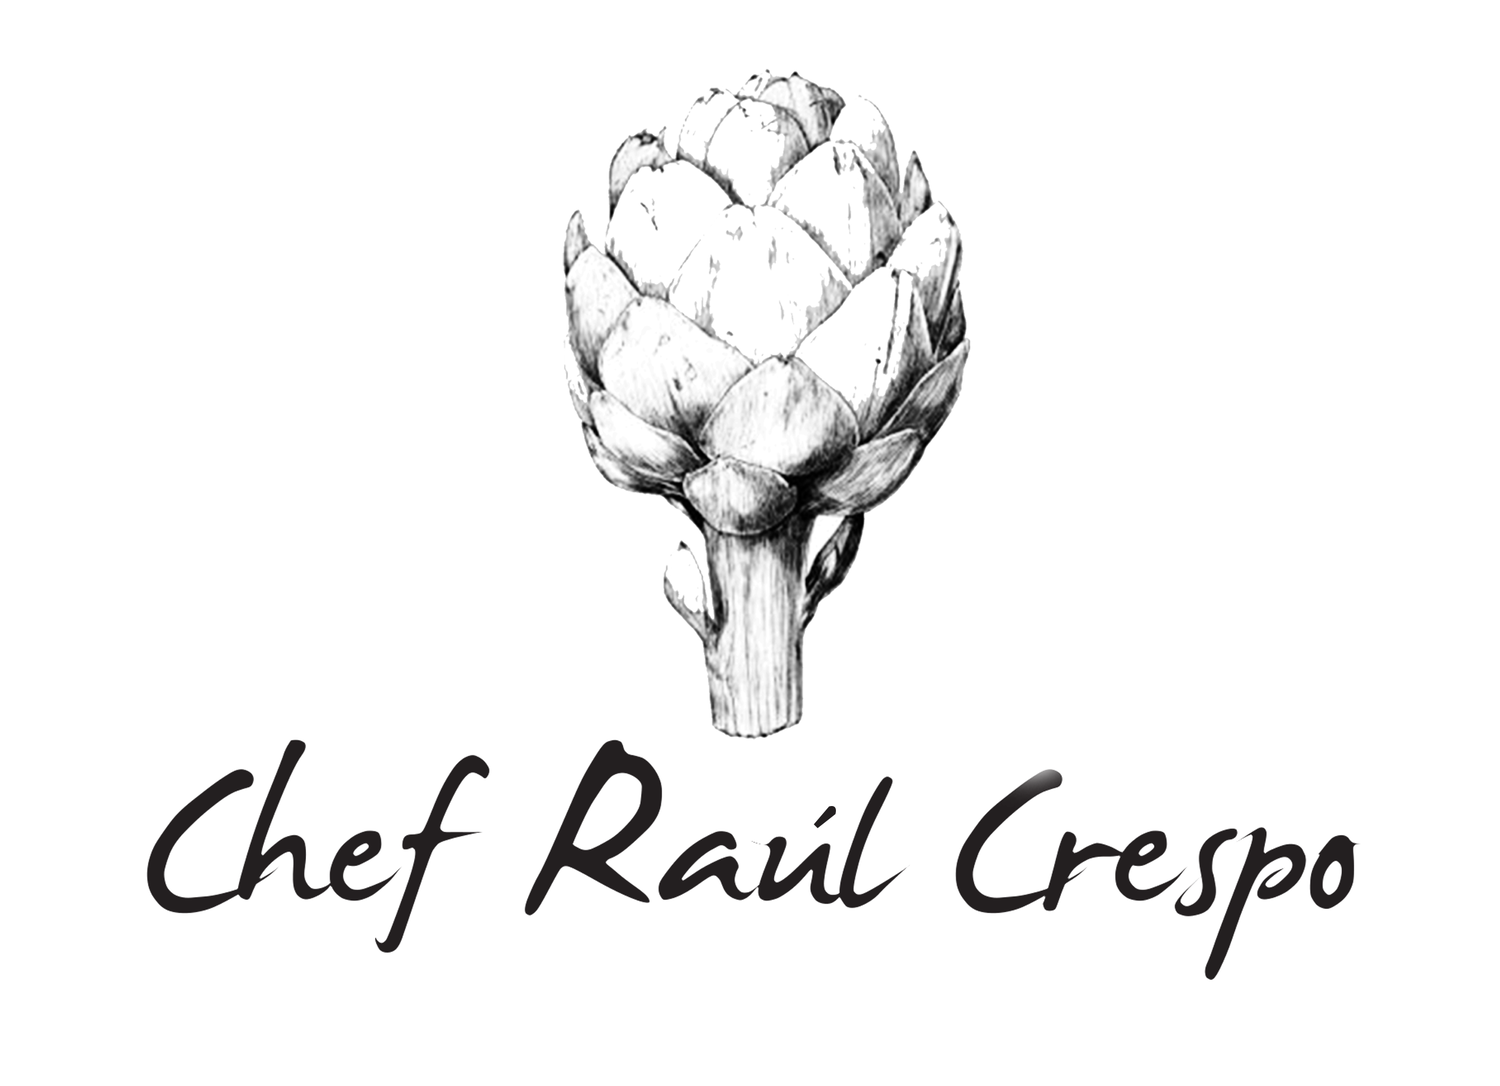 Chef Raul Crespo